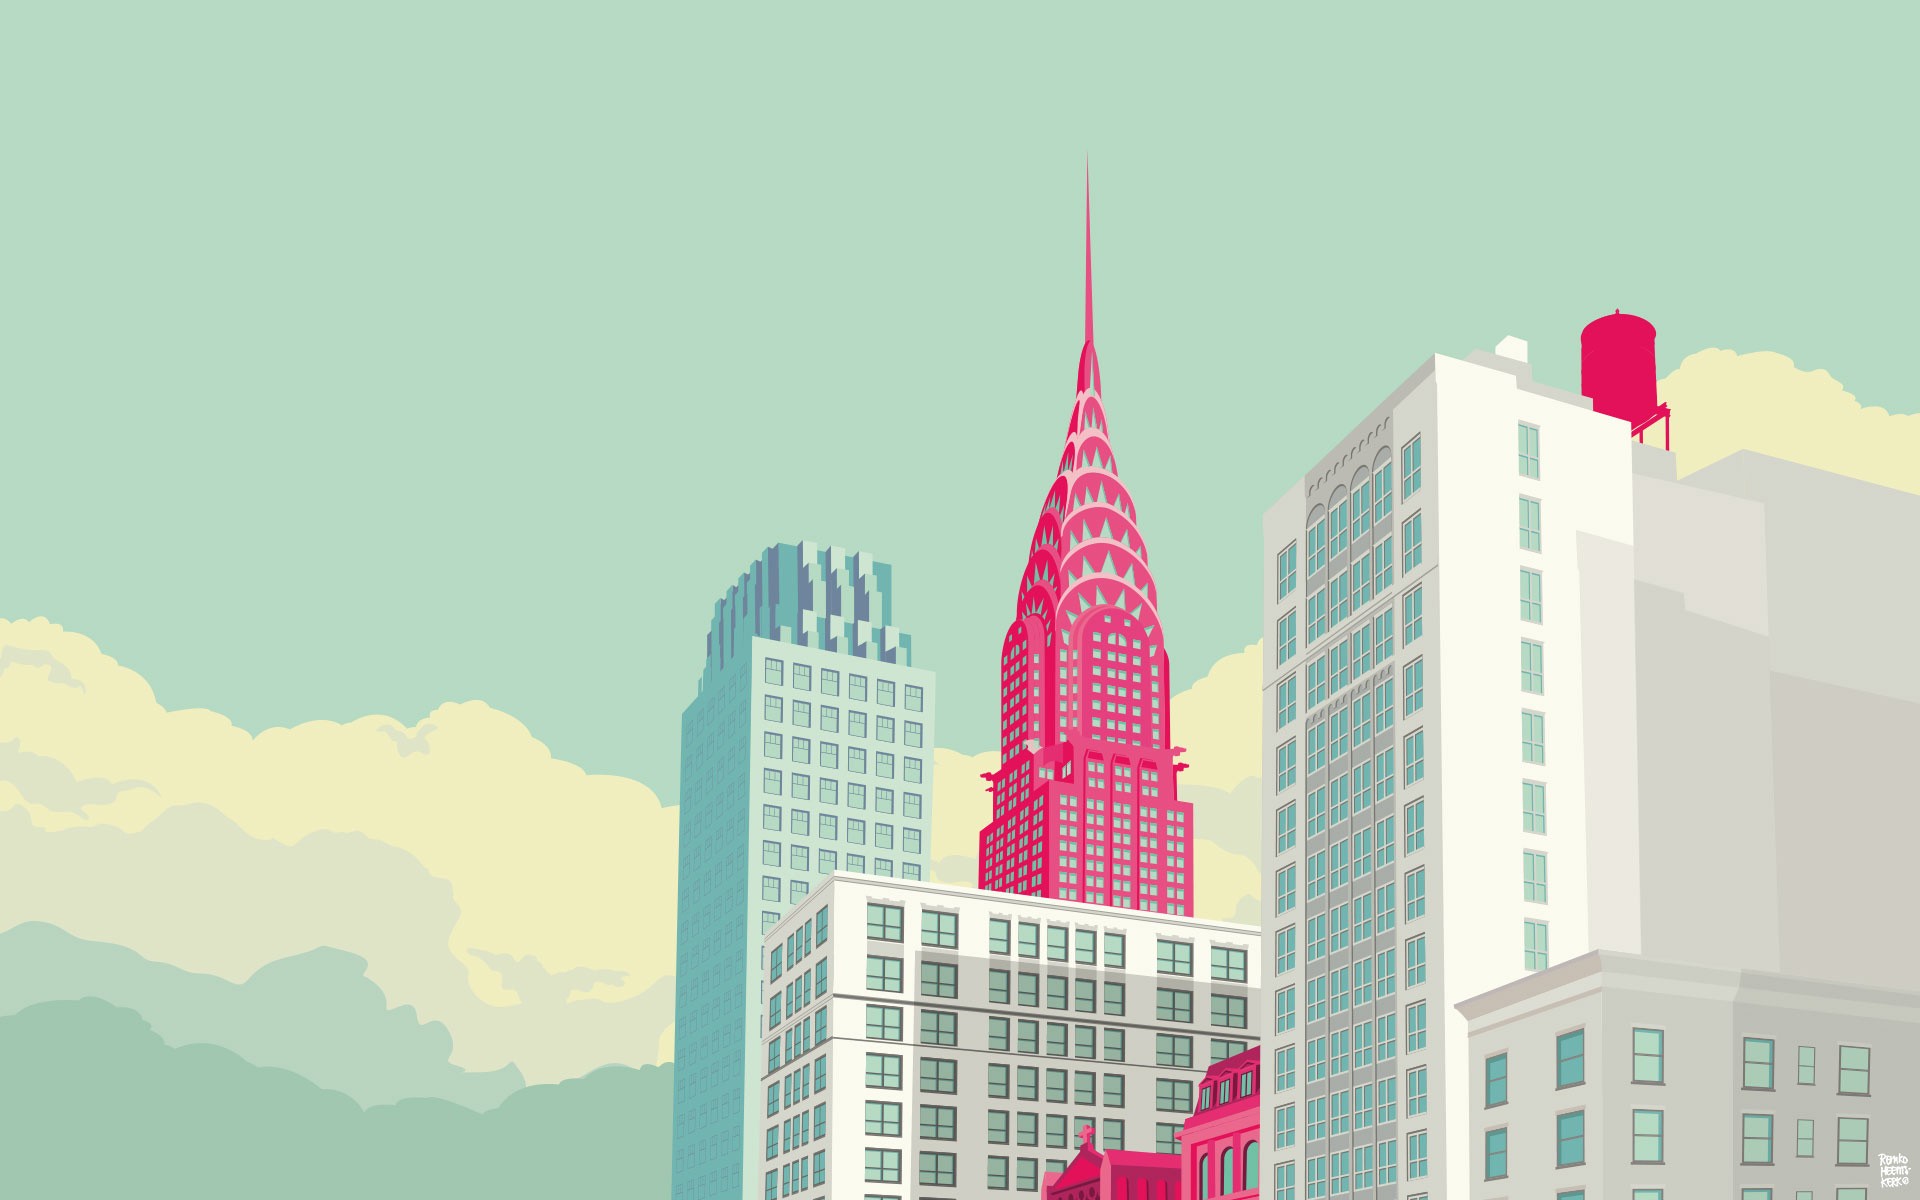 Скачать обои бесплатно Город, Нью Йорк, Эмпайр Стейт Билдинг, Художественные картинка на рабочий стол ПК